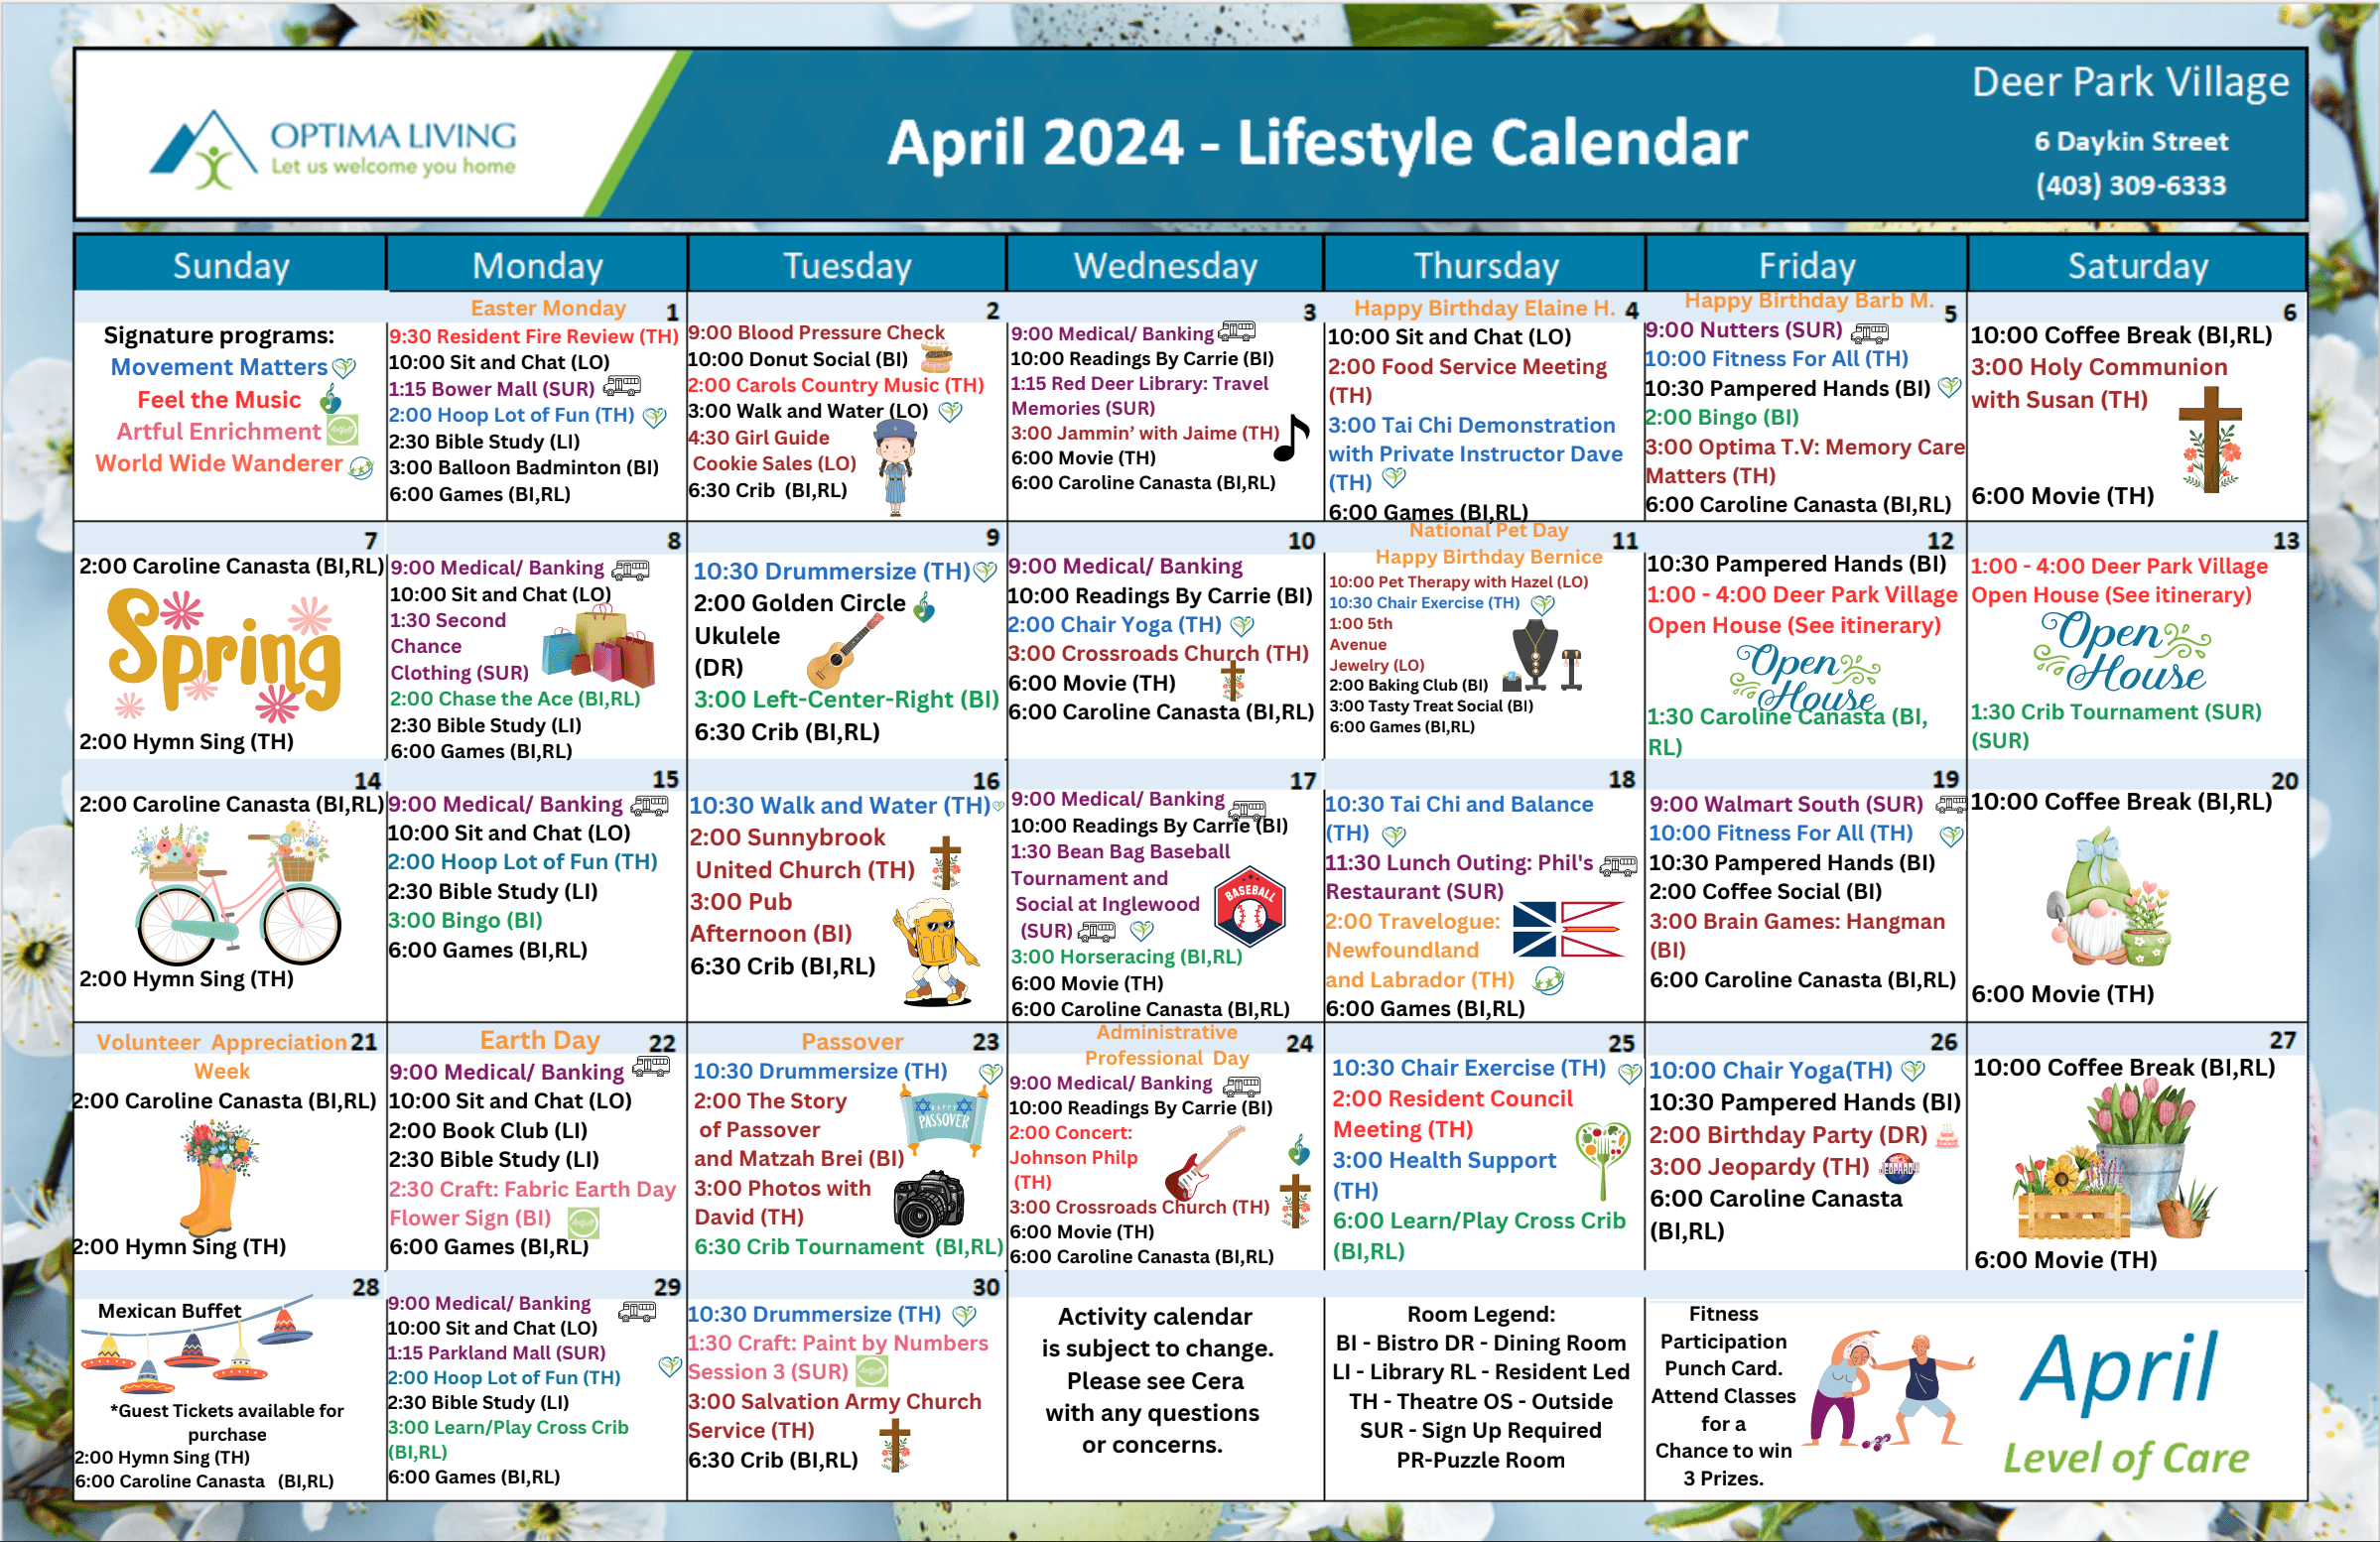 Deer Park Village April 2024 event calendar